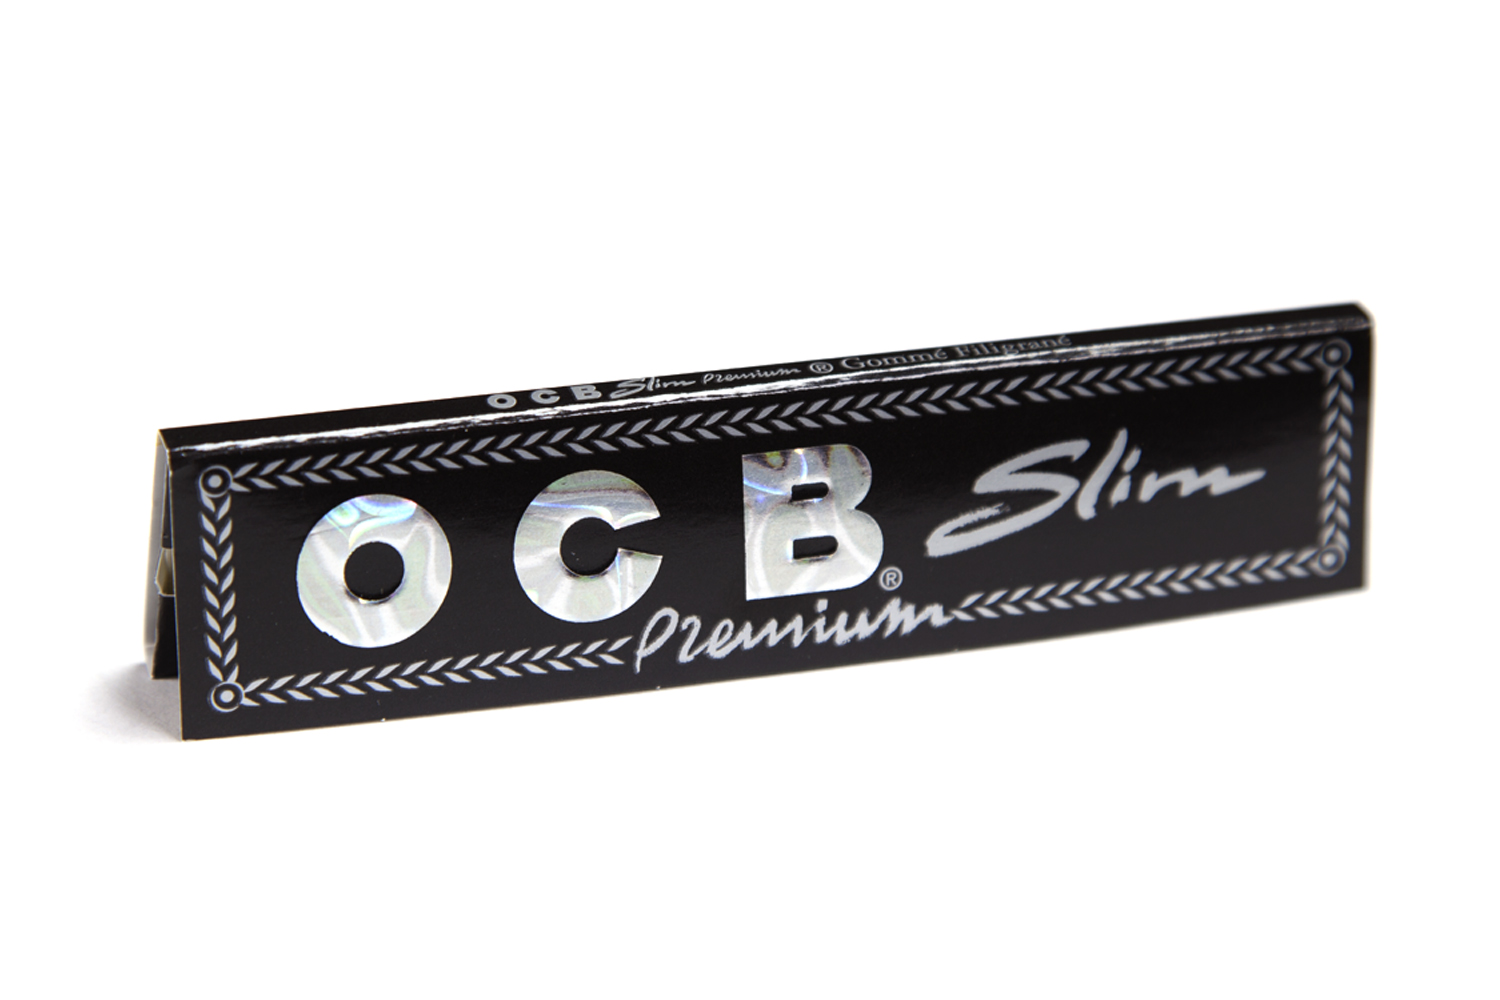 OCB Premium slim - Disponible sur